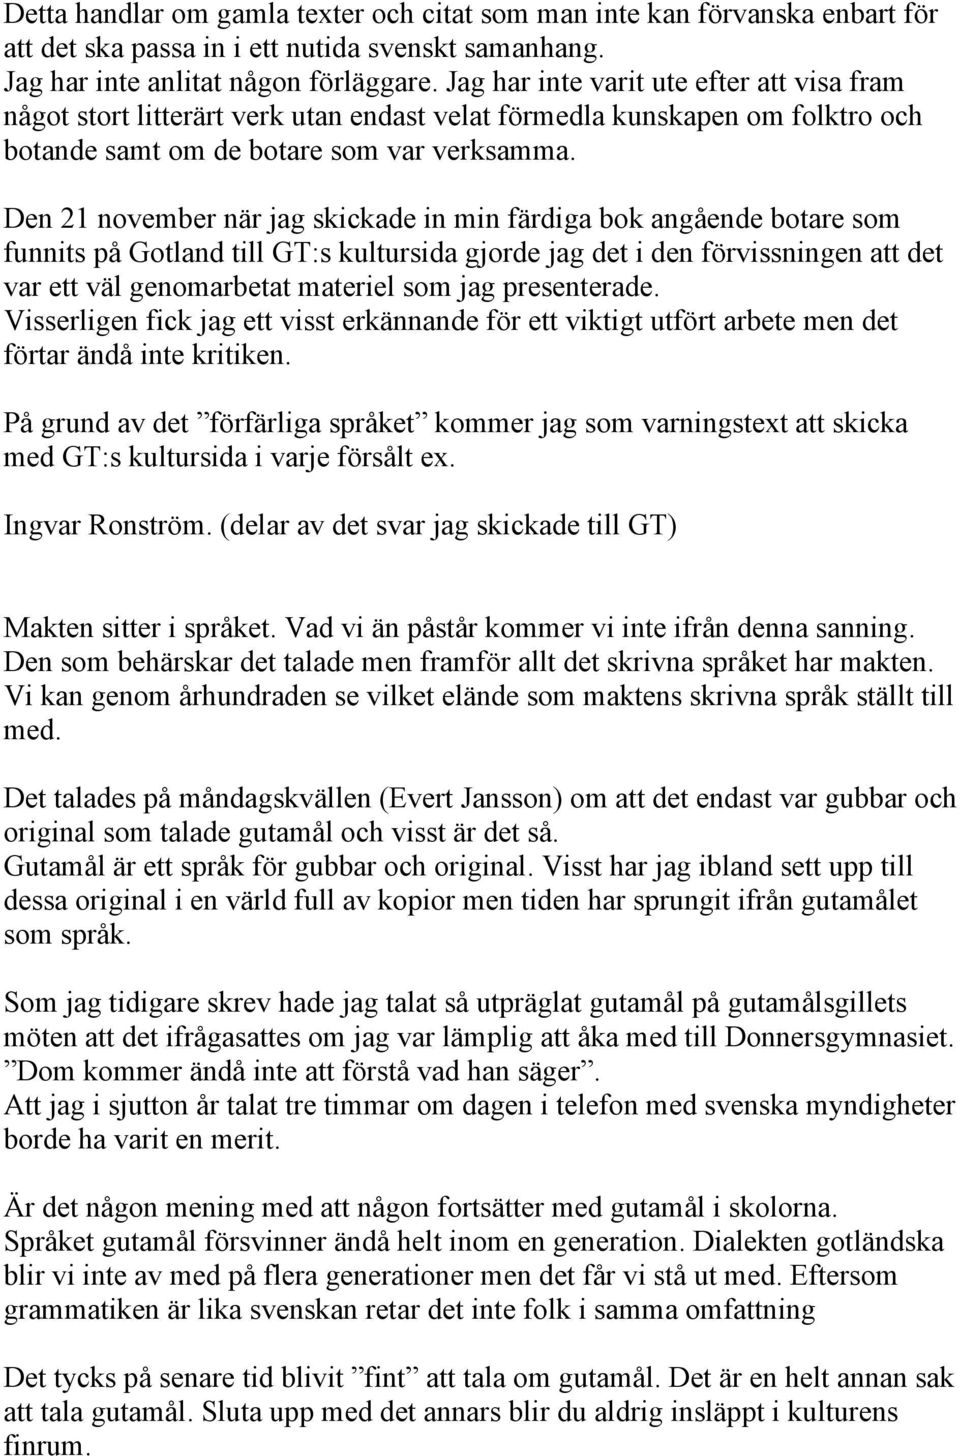 Den 21 november när jag skickade in min färdiga bok angående botare som funnits på Gotland till GT:s kultursida gjorde jag det i den förvissningen att det var ett väl genomarbetat materiel som jag